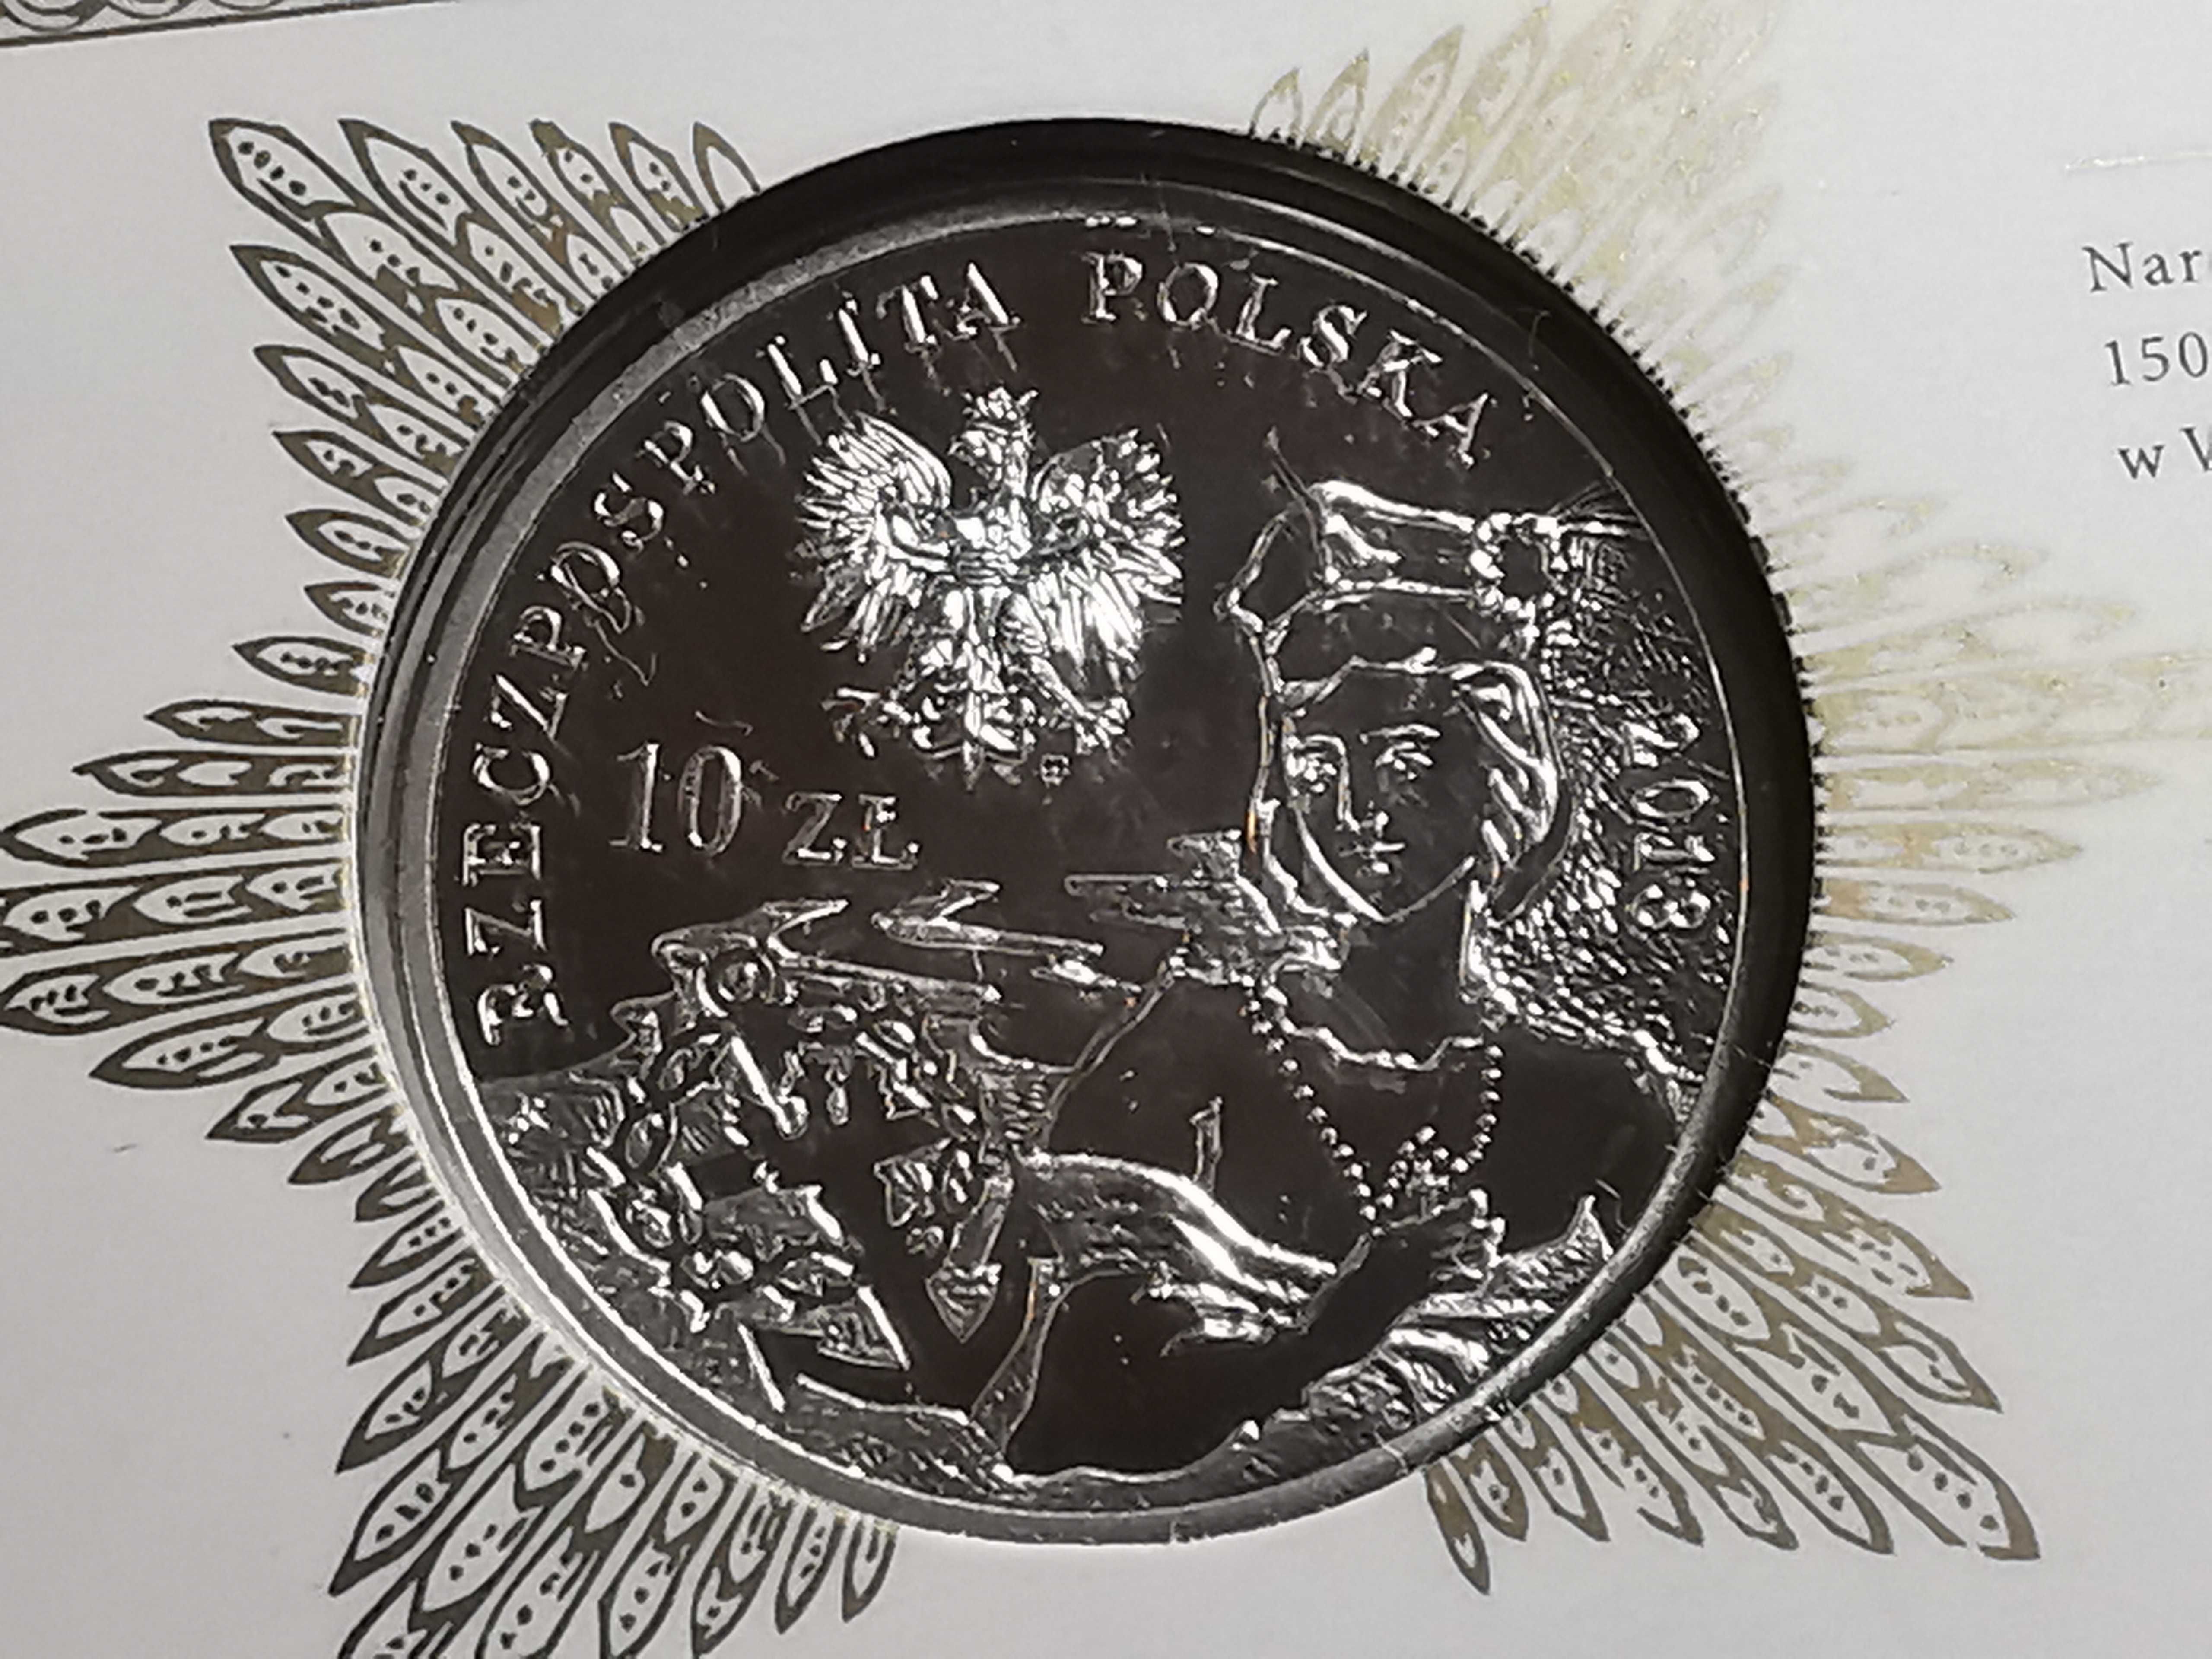 Moneta 150 Rocznica Powstania Styczniowego, Blister - Lustrzanka 10zł